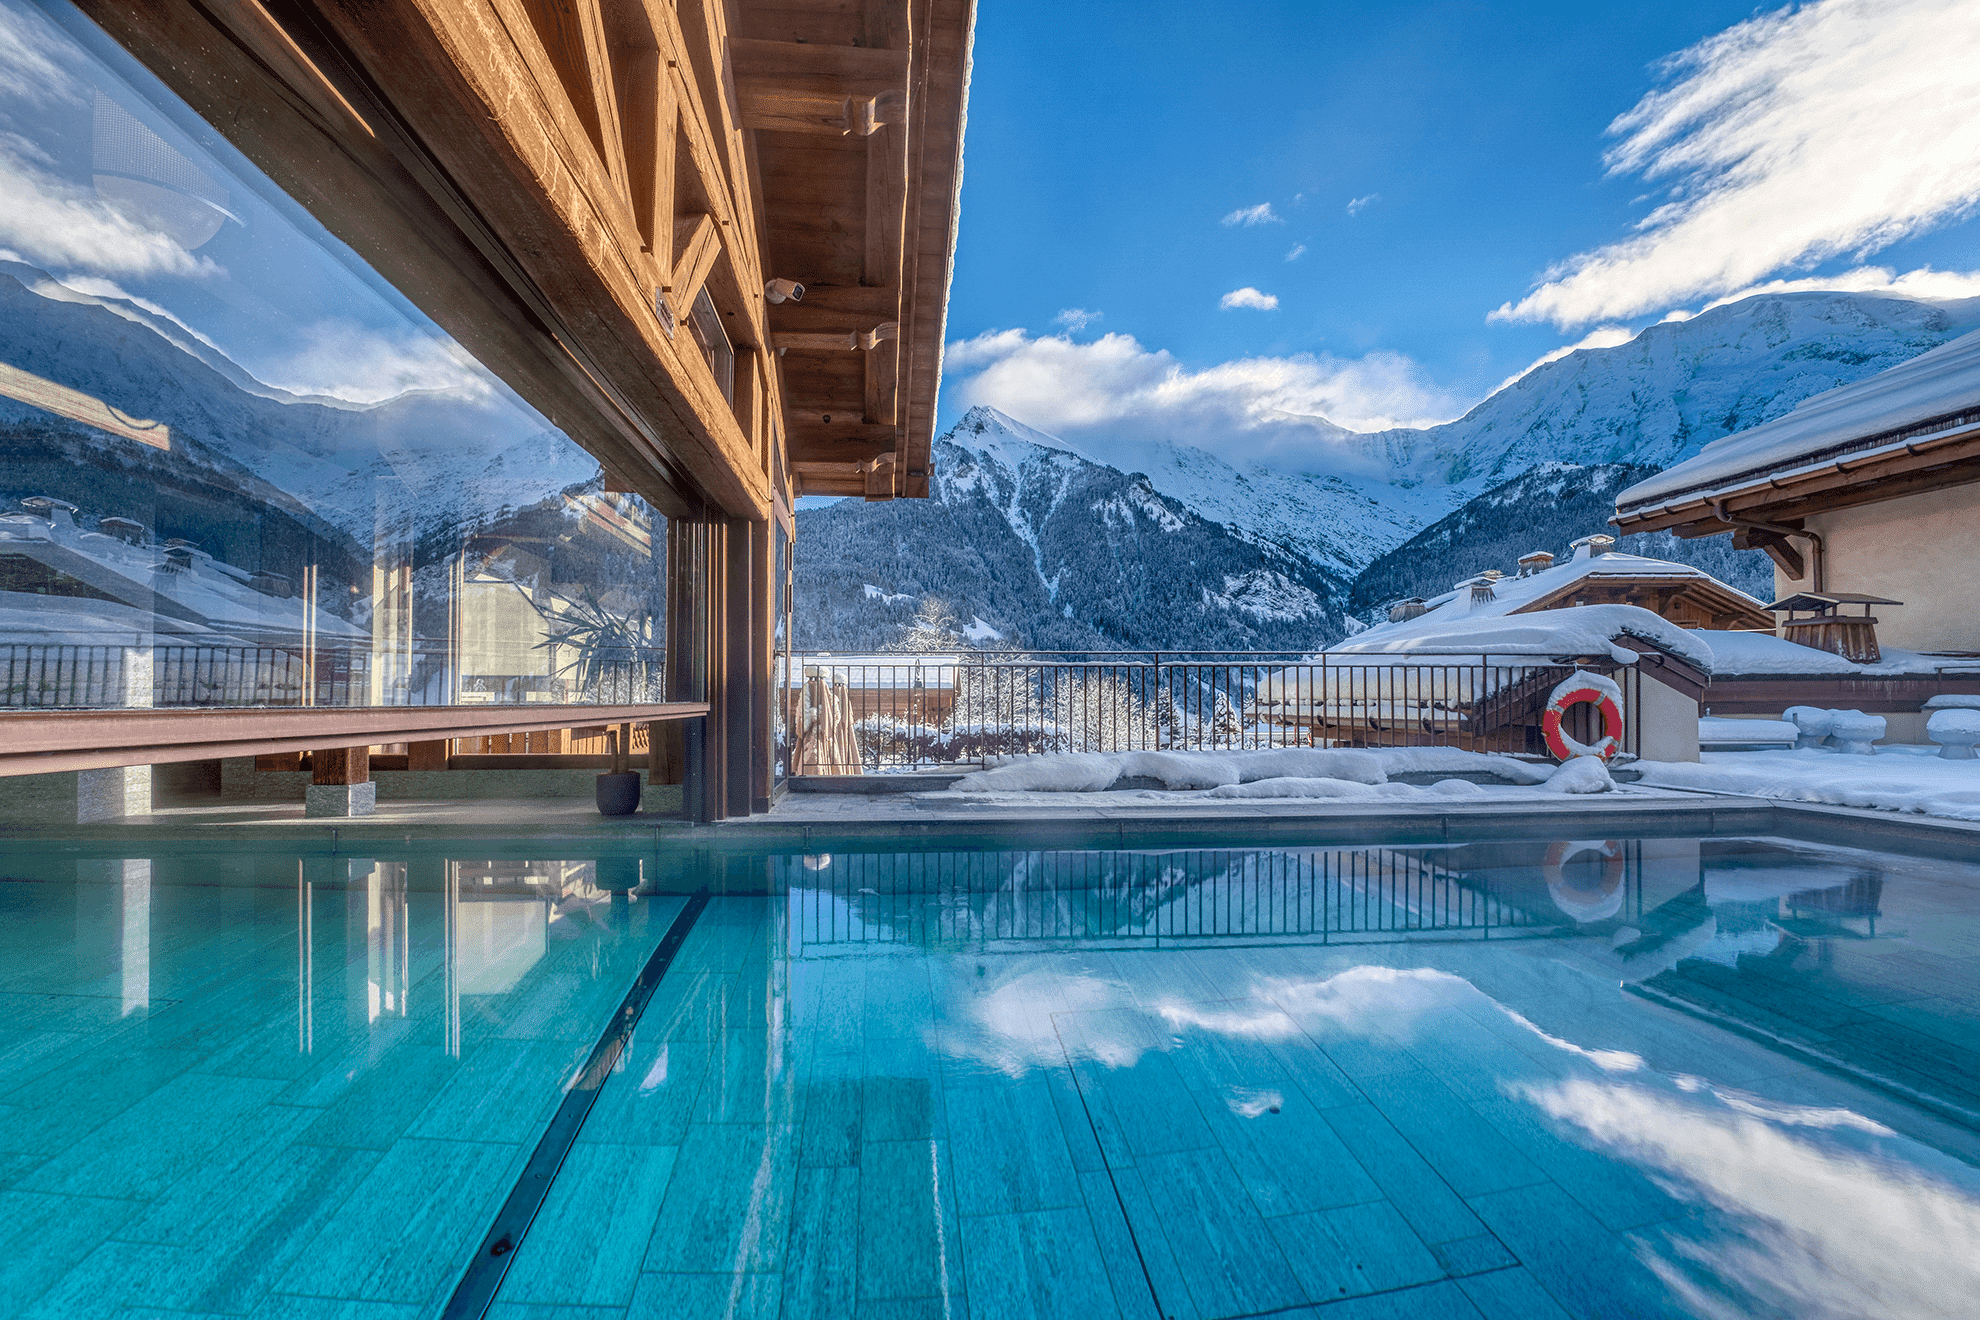 Profitez des avantages de l'hôtel Armancette qui propose un accès au spa avec piscine intérieure/extérieure face à un panorama d’exception, 3 jacuzzis, un sauna et un hammam.